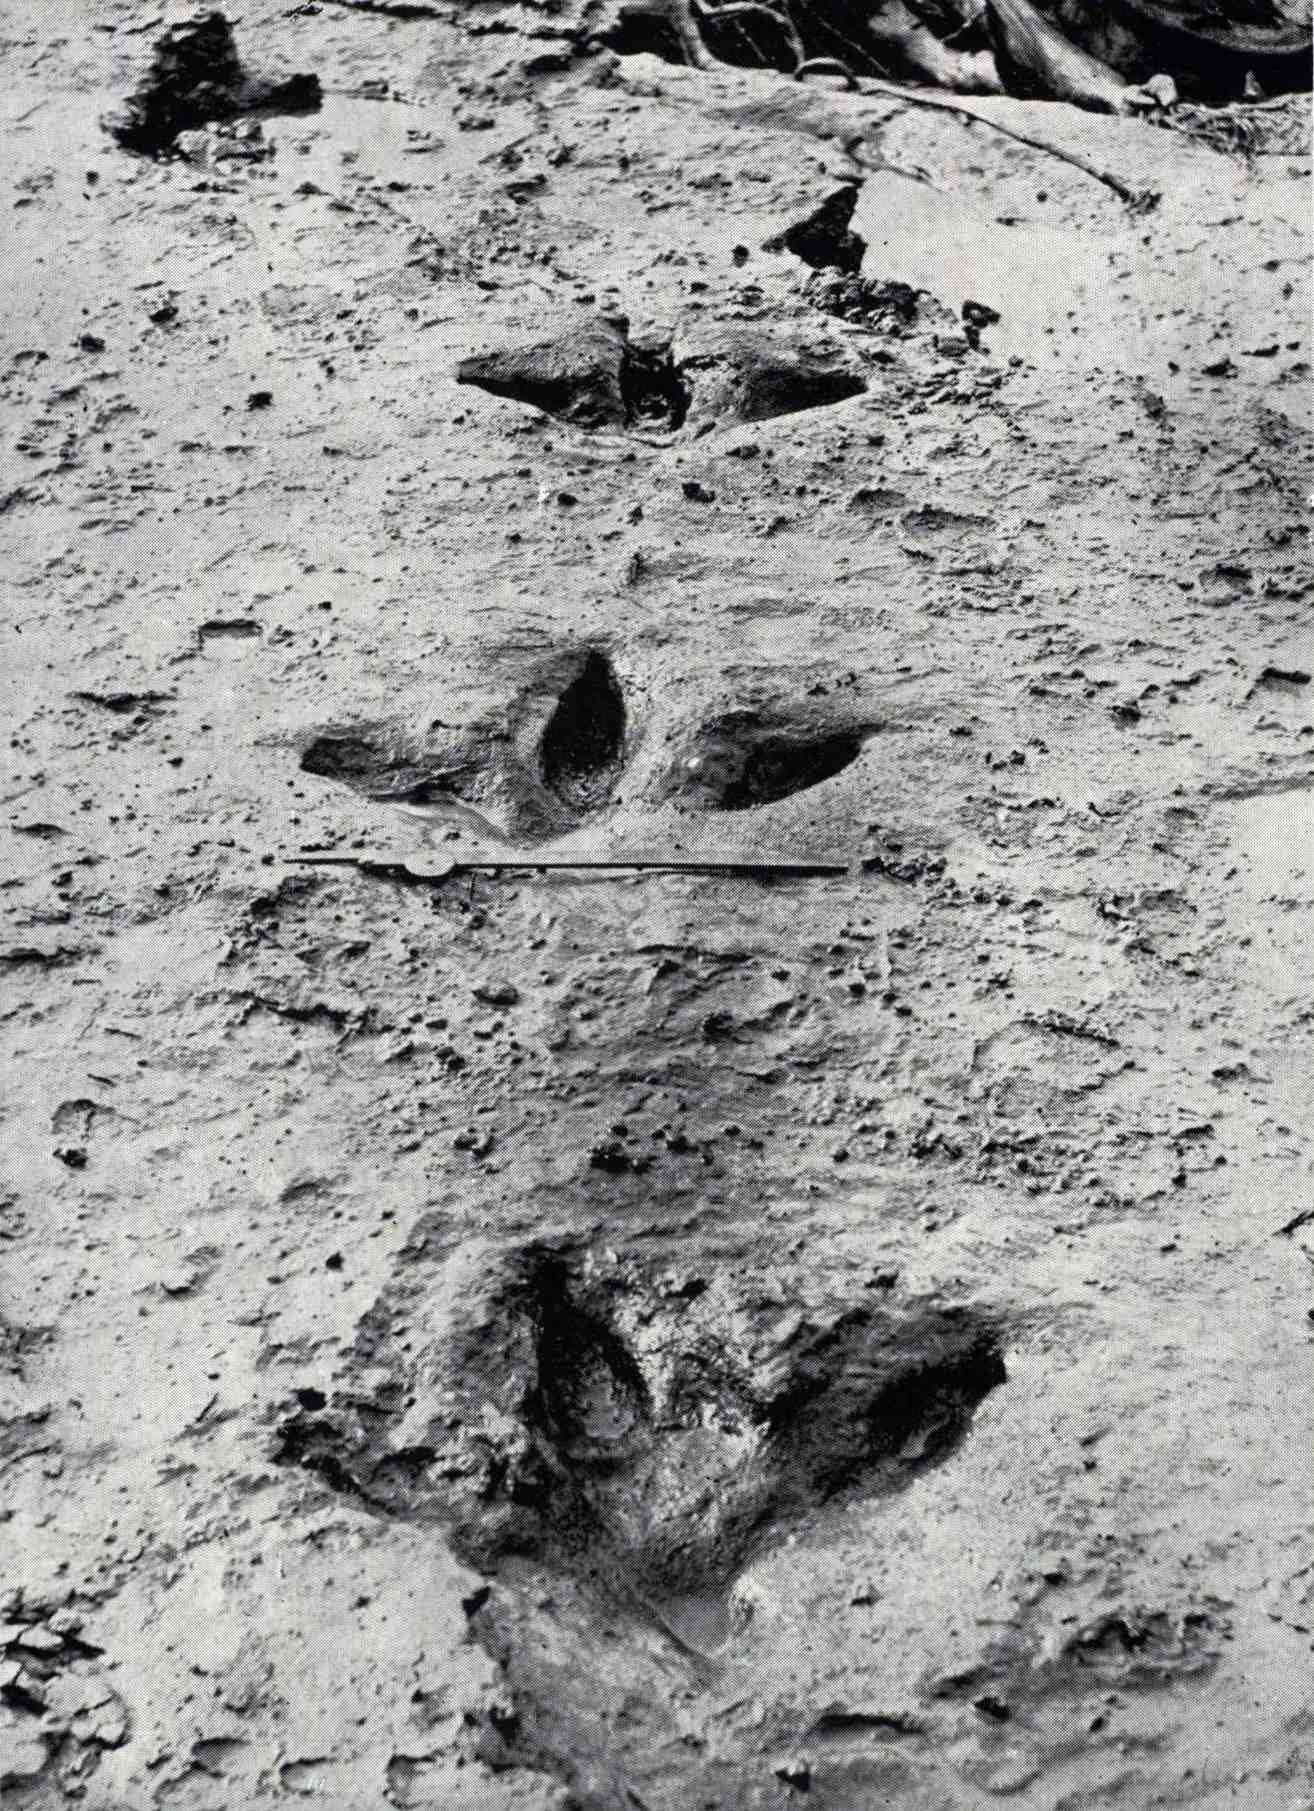 Những dấu chân của Dinornis robustus này lộ ra vào tháng 1911 năm XNUMX khi một trận lũ ở sông Manawatū cuốn trôi lớp đất sét xanh đã bao phủ và bảo quản chúng. Họ chỉ ra rằng moa có ba ngón chân hướng trước mạnh mẽ và, không giống như hầu hết các loài khác, một ngón chân nhỏ phía sau.